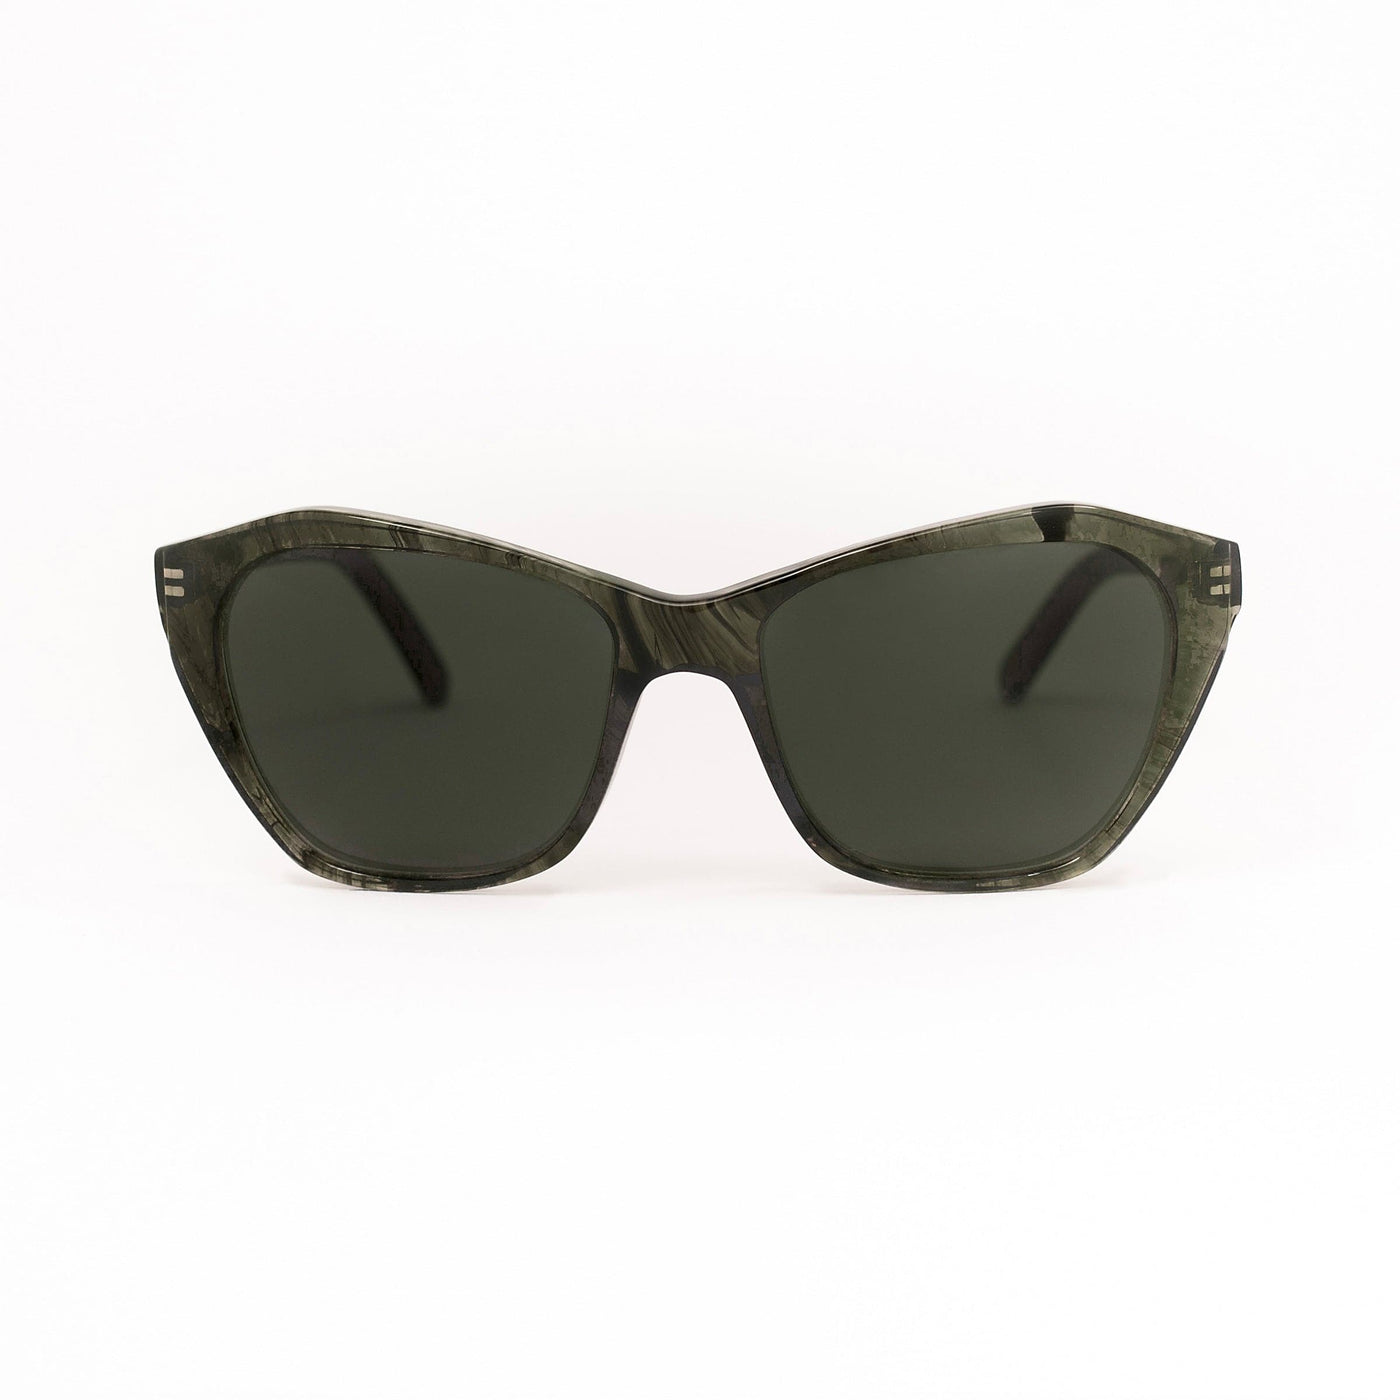 Sunglasses OA V 03